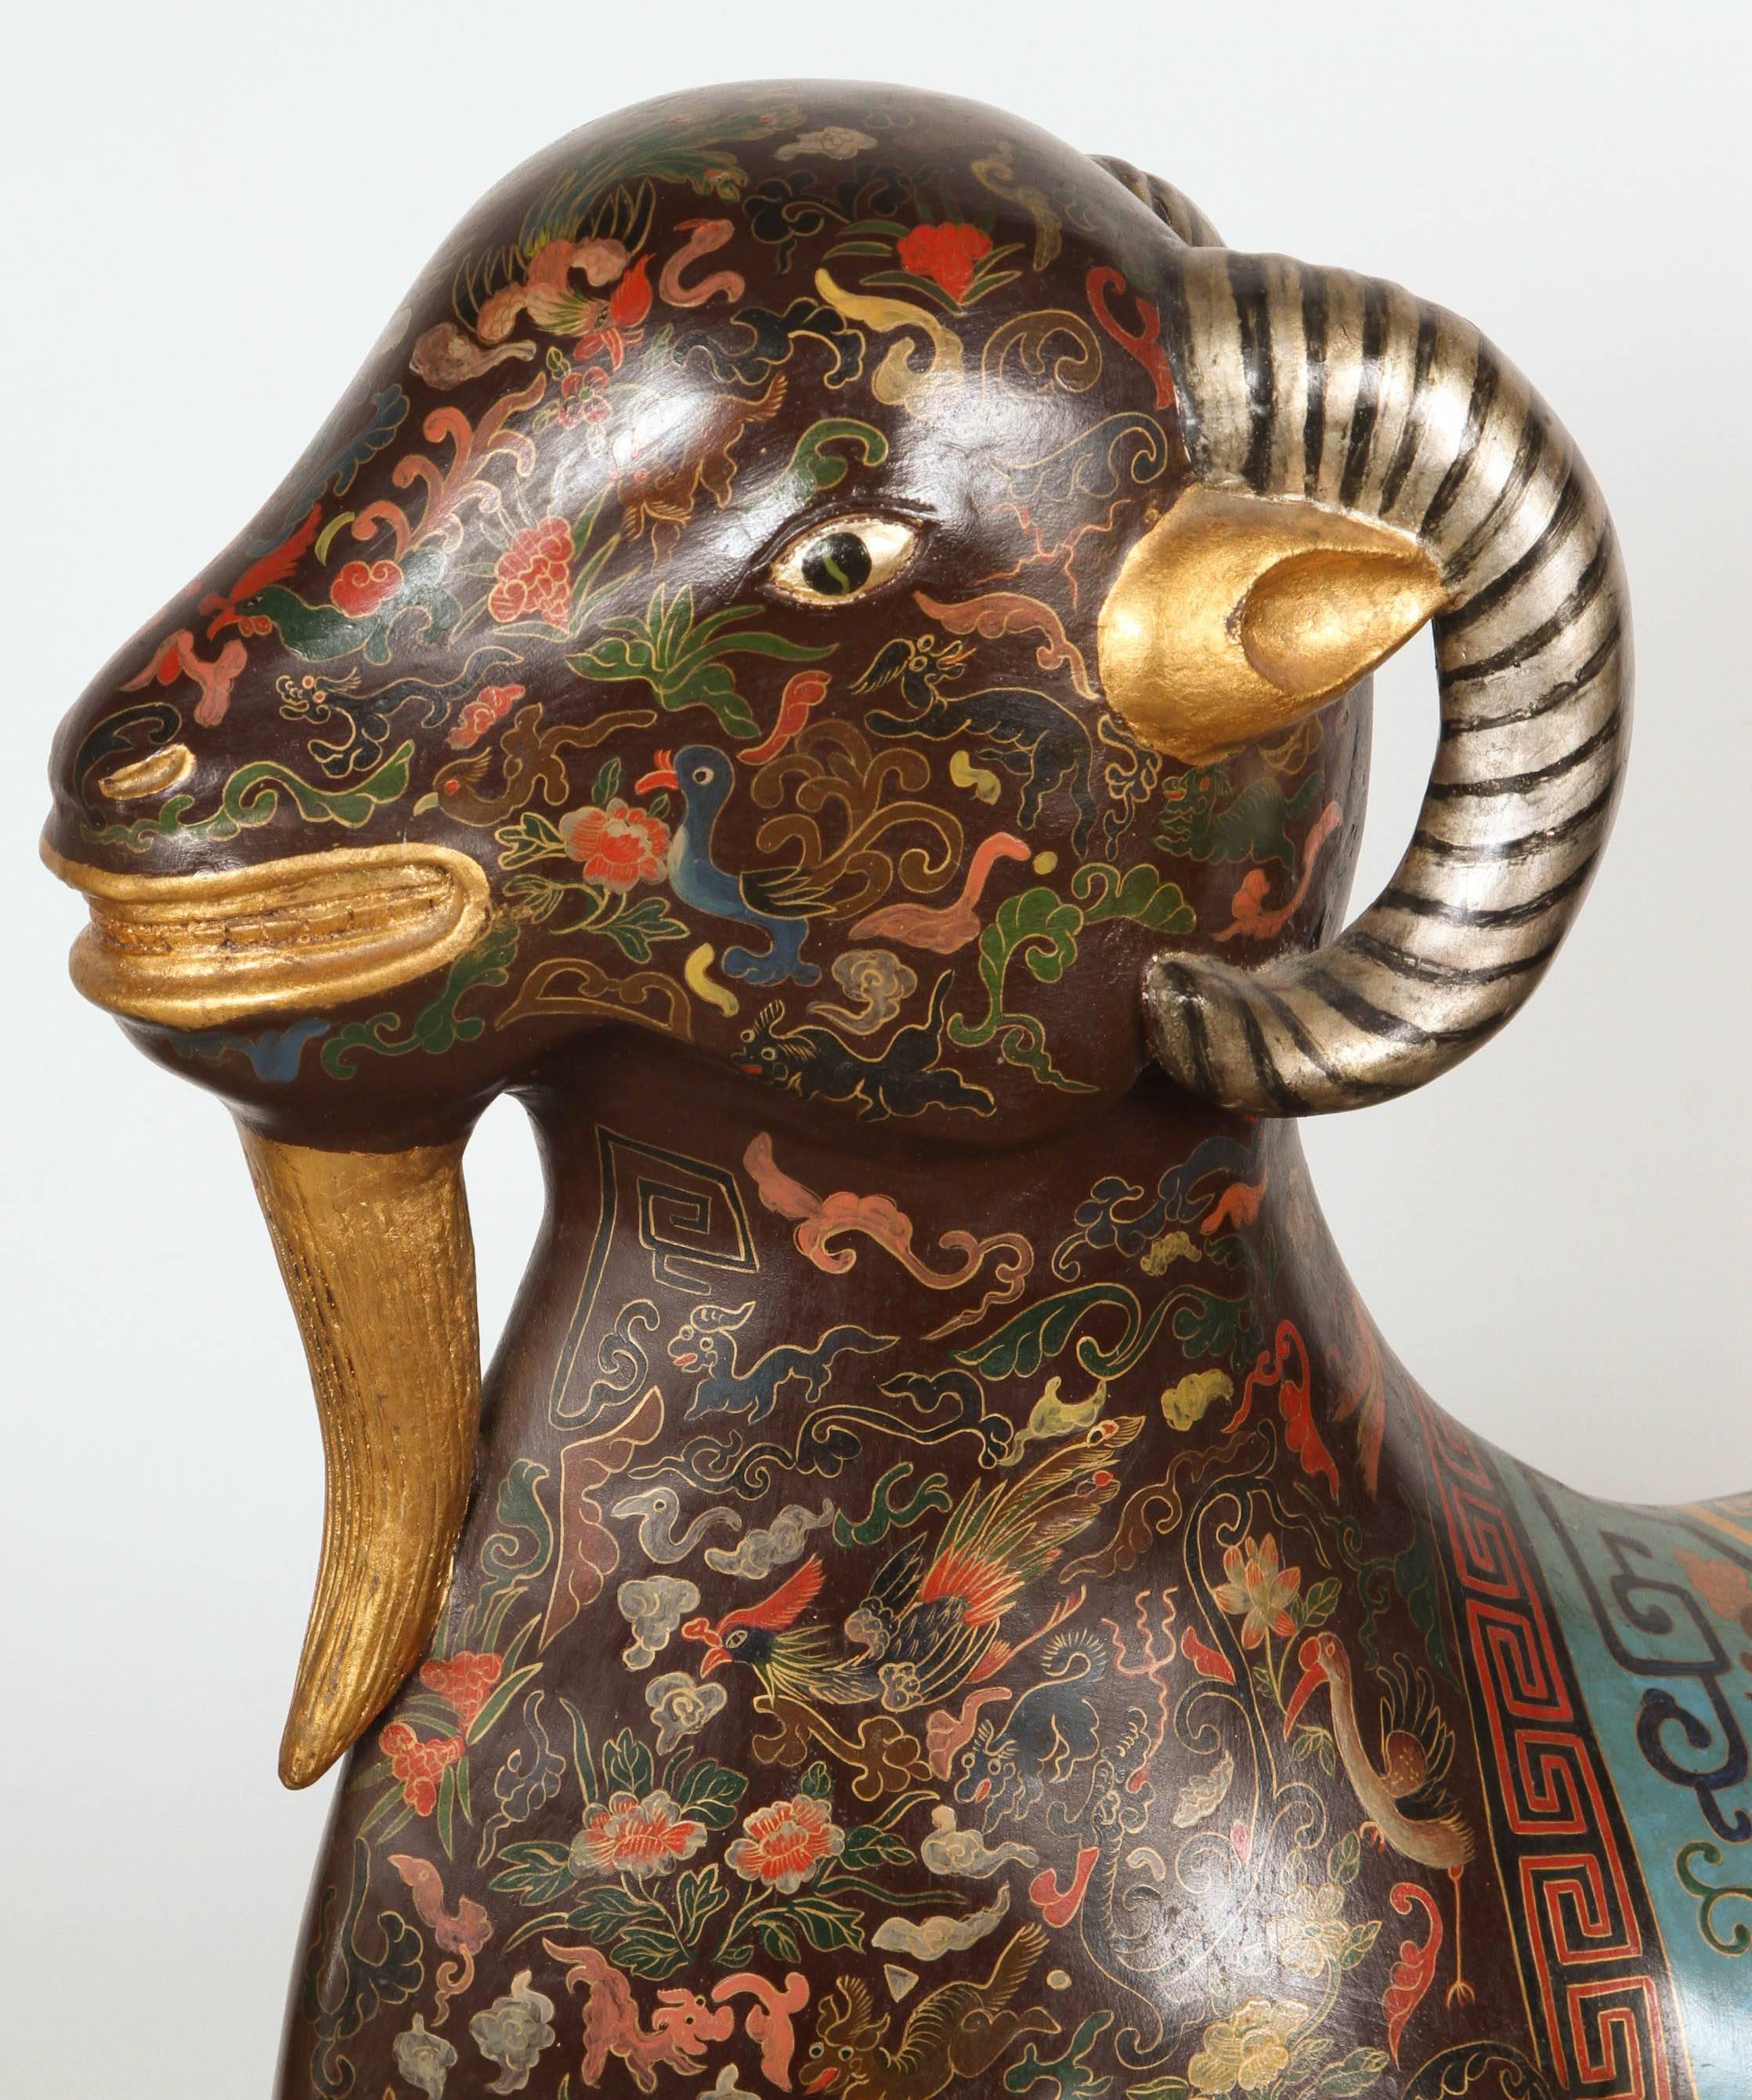 Der asiatische liegende Widder ist auf vergoldeten Hufen ruhend dargestellt, mit erhobenem Kopf und schwarzen Augen, die geradeaus blicken, mit leicht geöffnetem Maul, fein verziert mit einem dichten verschnörkelten Muster aus Golddraht auf braunem